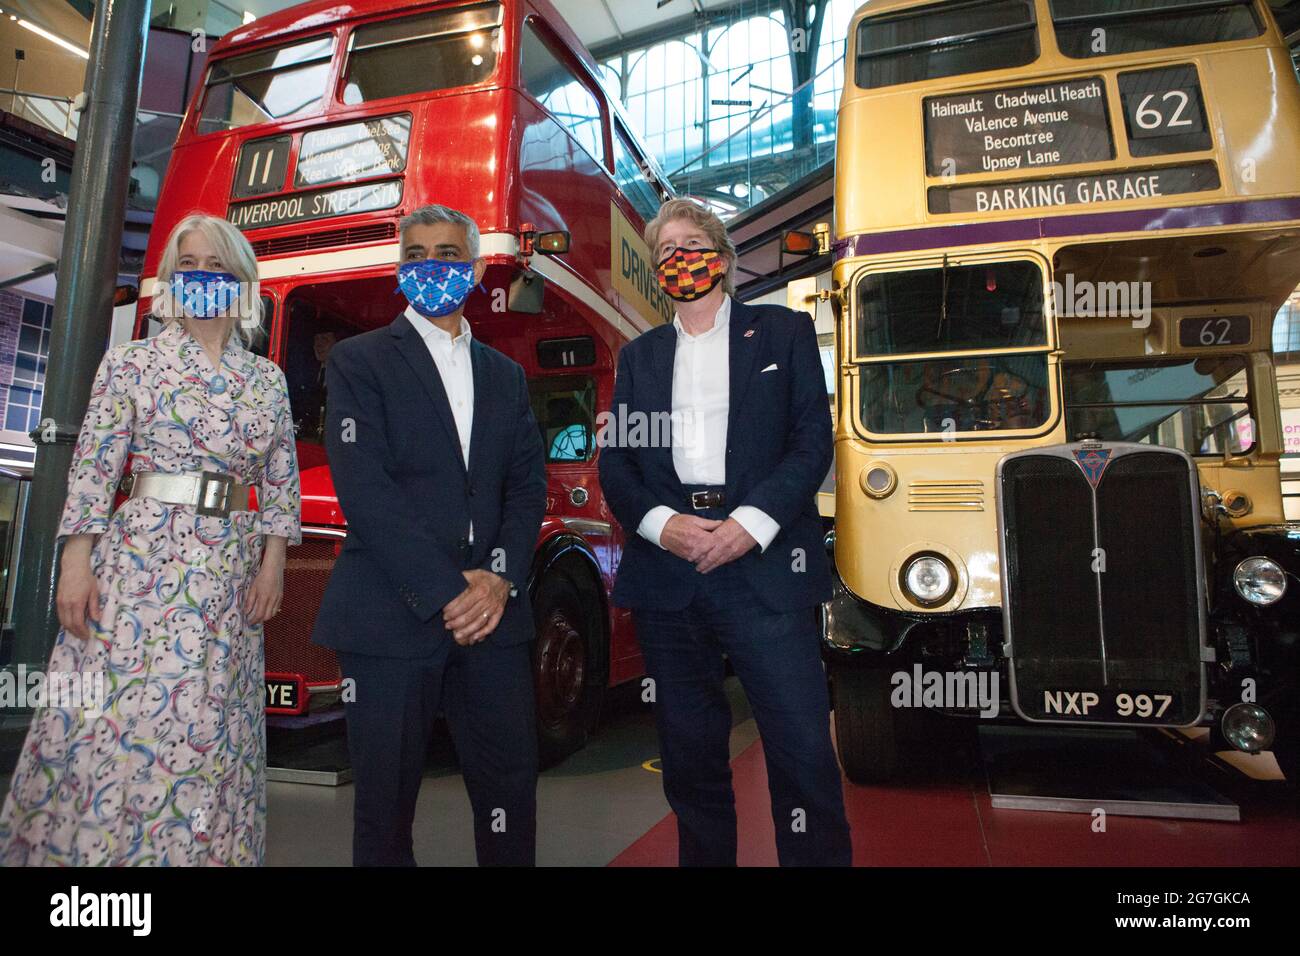 Londra, Regno Unito, 14 luglio 2021: Il sindaco di Londra Sadiq Khan ha visitato Covent Garden e il London Transport Museum questa mattina per lanciare la sua campagna LetsDoLondon. L'obiettivo è incoraggiare i turisti a visitare il centro di Londra. Poiché lui e i trasporti per Londra stanno rendendo le maschere obbligatorie sulla metropolitana di Londra, si spera che i turisti possano visitare in modo sicuro nonostante l'aumento del numero di coronavirus. Al museo ha ottenuto sedersi nella sede del conducente di un autobus, che onora il lavoro del suo padre come autista dell'autobus. Con lui Justine Simons (Vice Sindaco per la Cultura e le Industrie creative) e Sam Mullins (Direttore della Lon Foto Stock